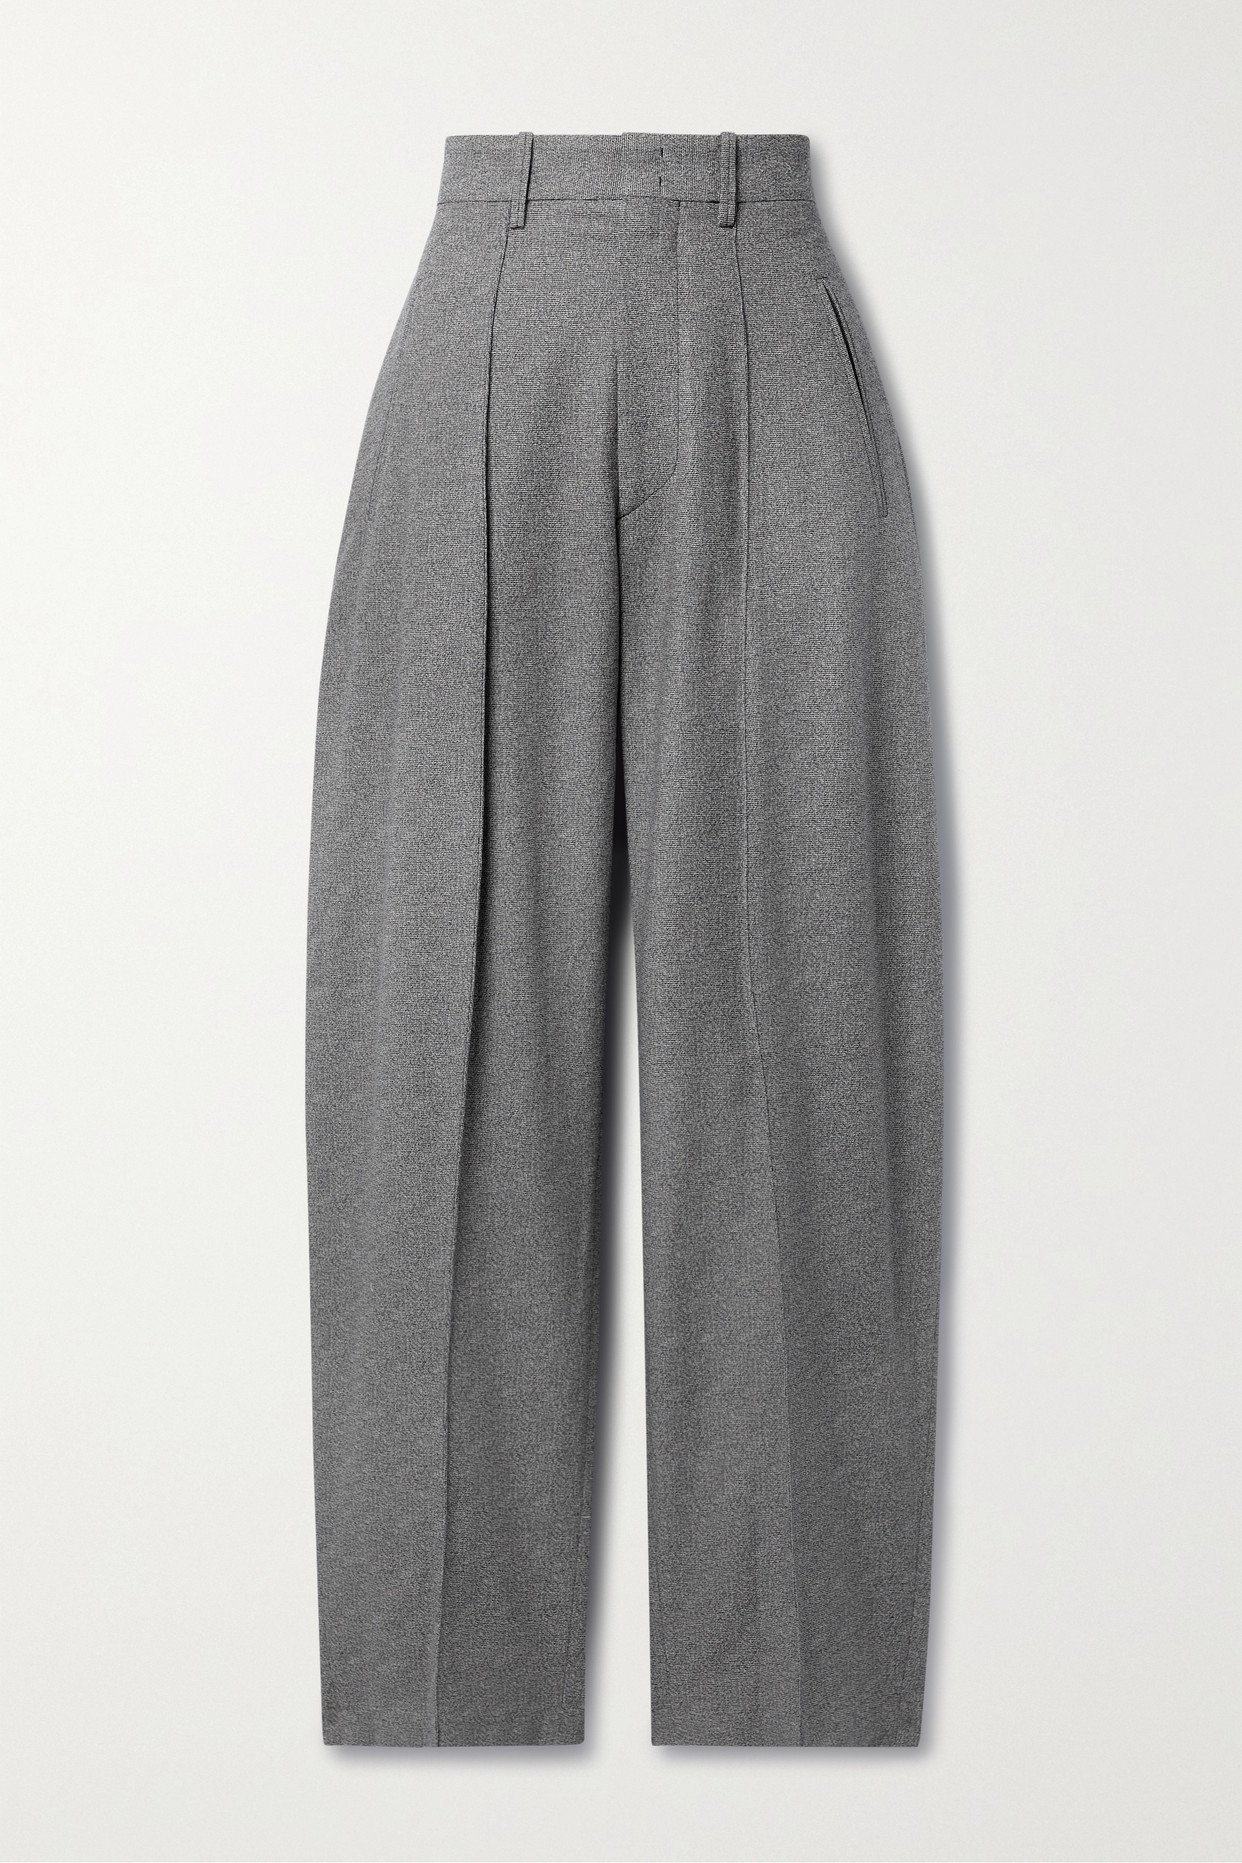 Barrie wide-leg wool-crepe pants